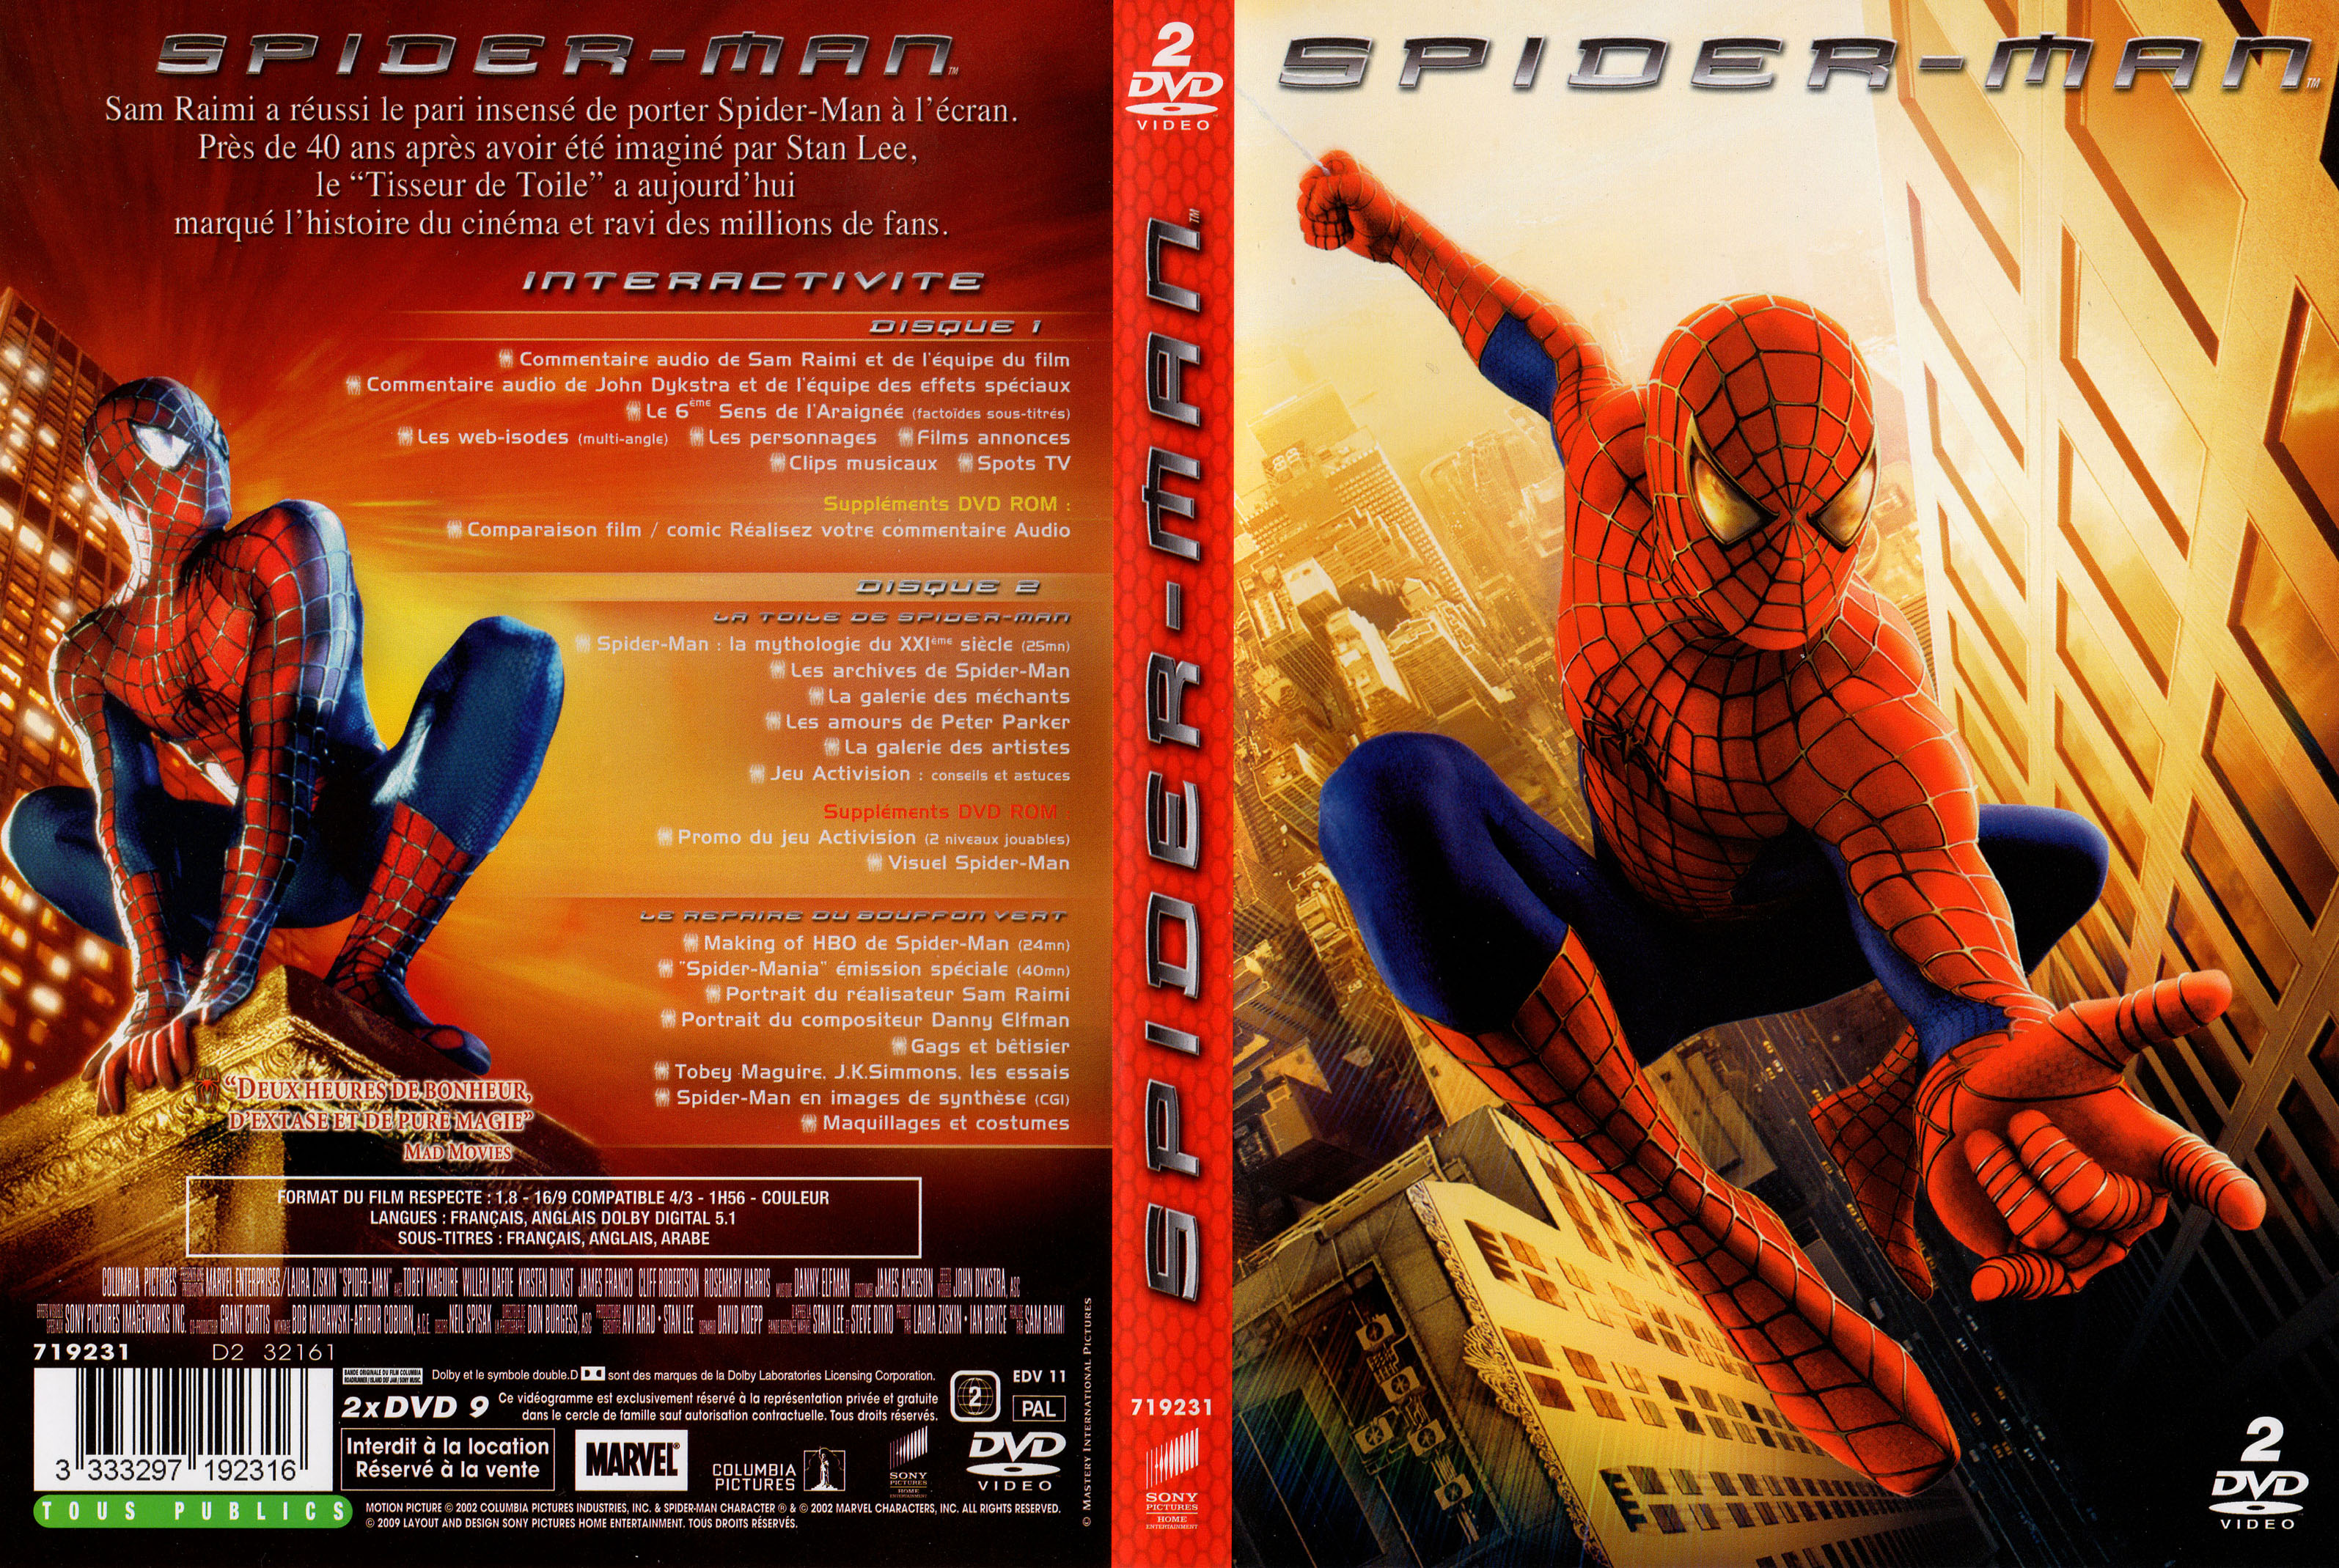 Jaquette DVD Spider-man